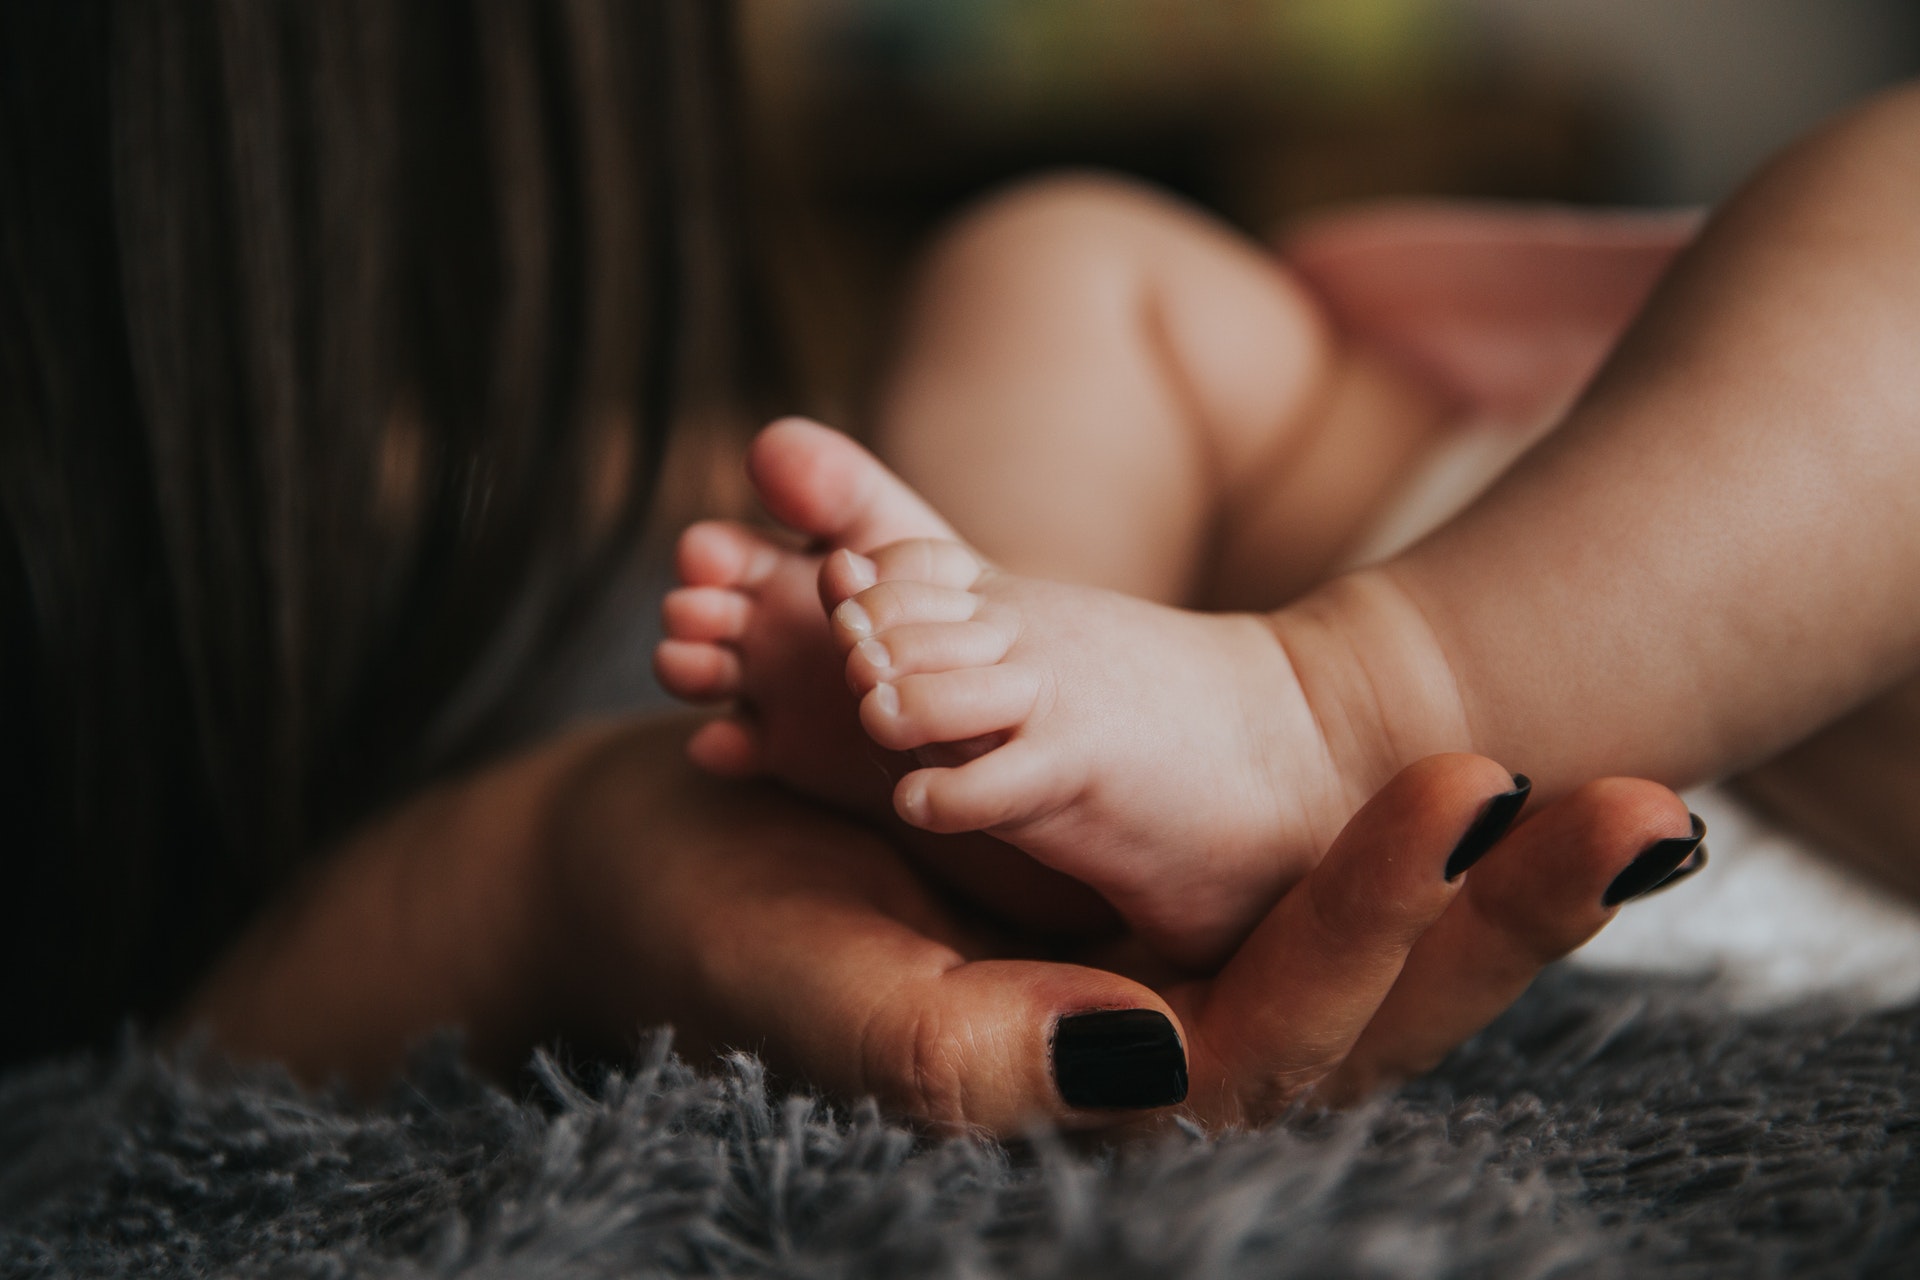 Más de 2.000 imágenes gratis de Recién Nacido y Bebé - Pixabay